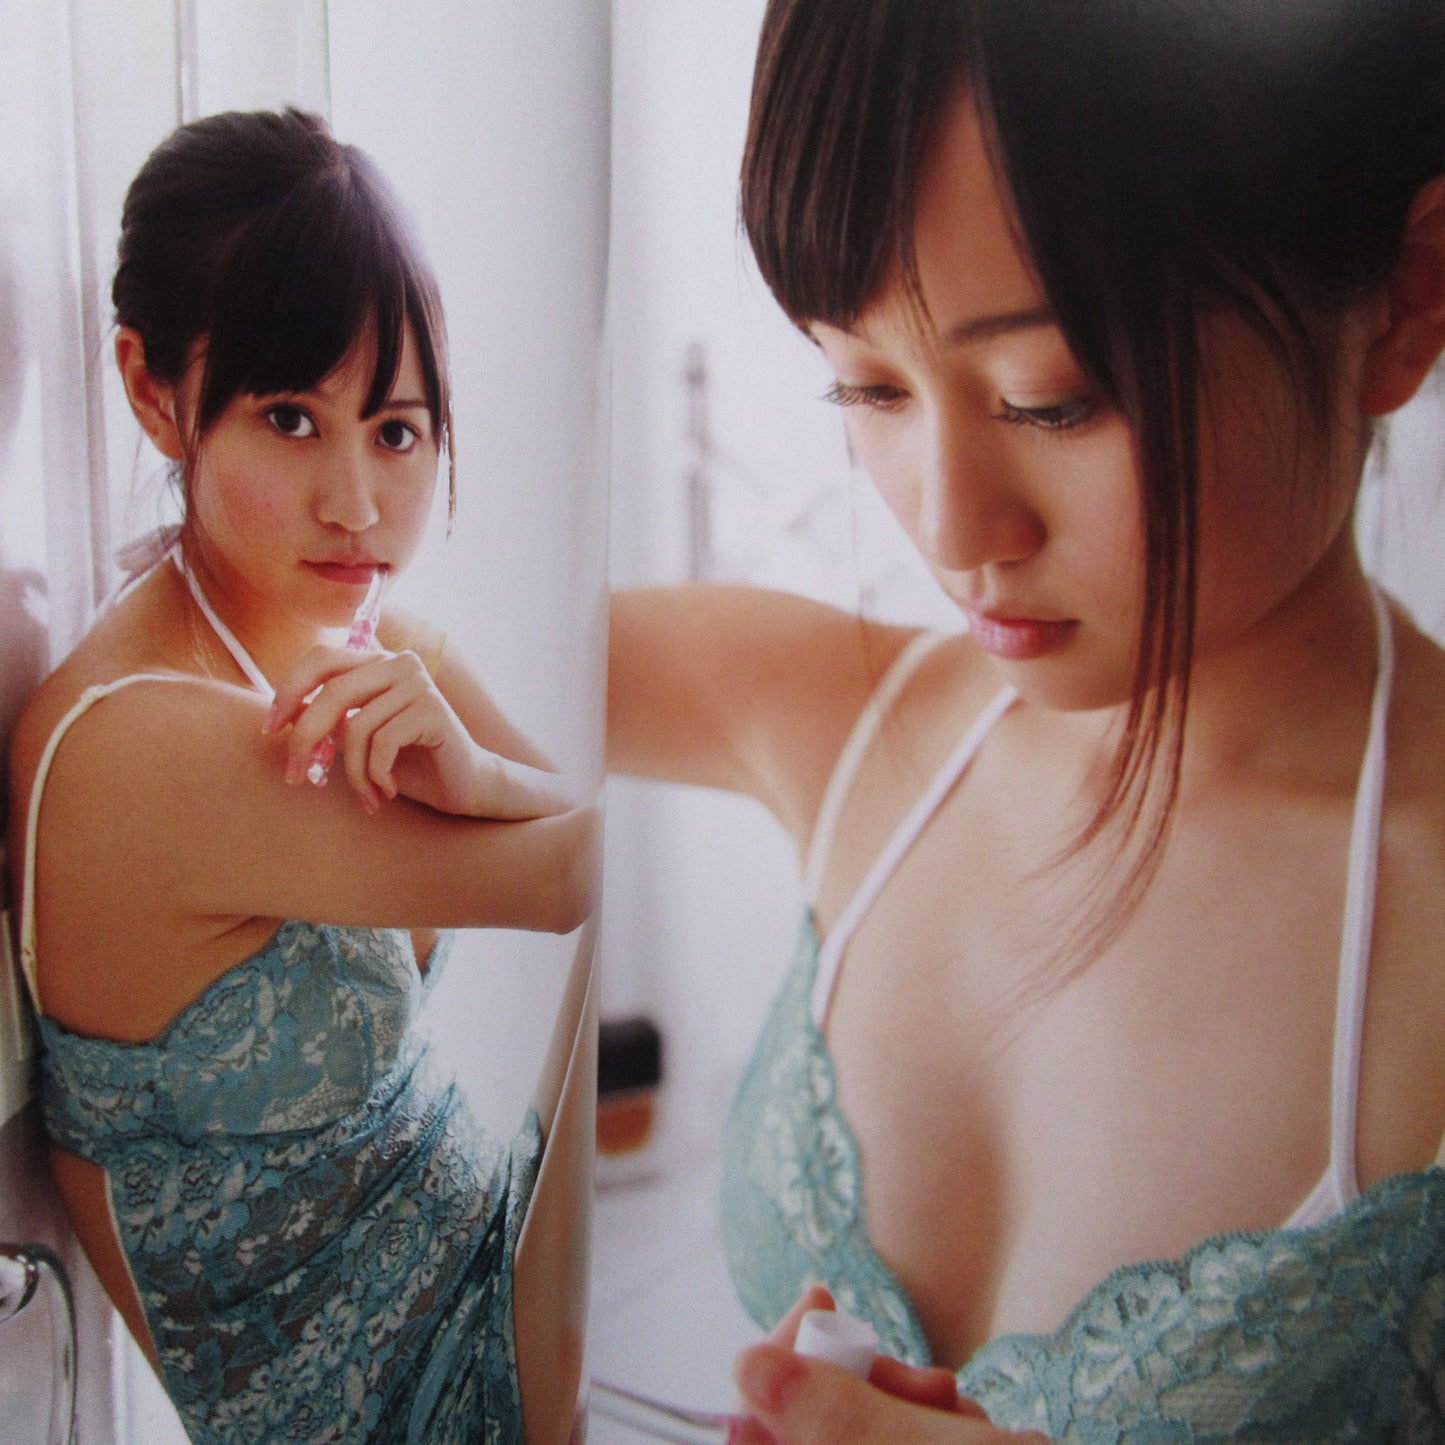 Atsuko Maeda Photo Book "Atsuko" / AKB48